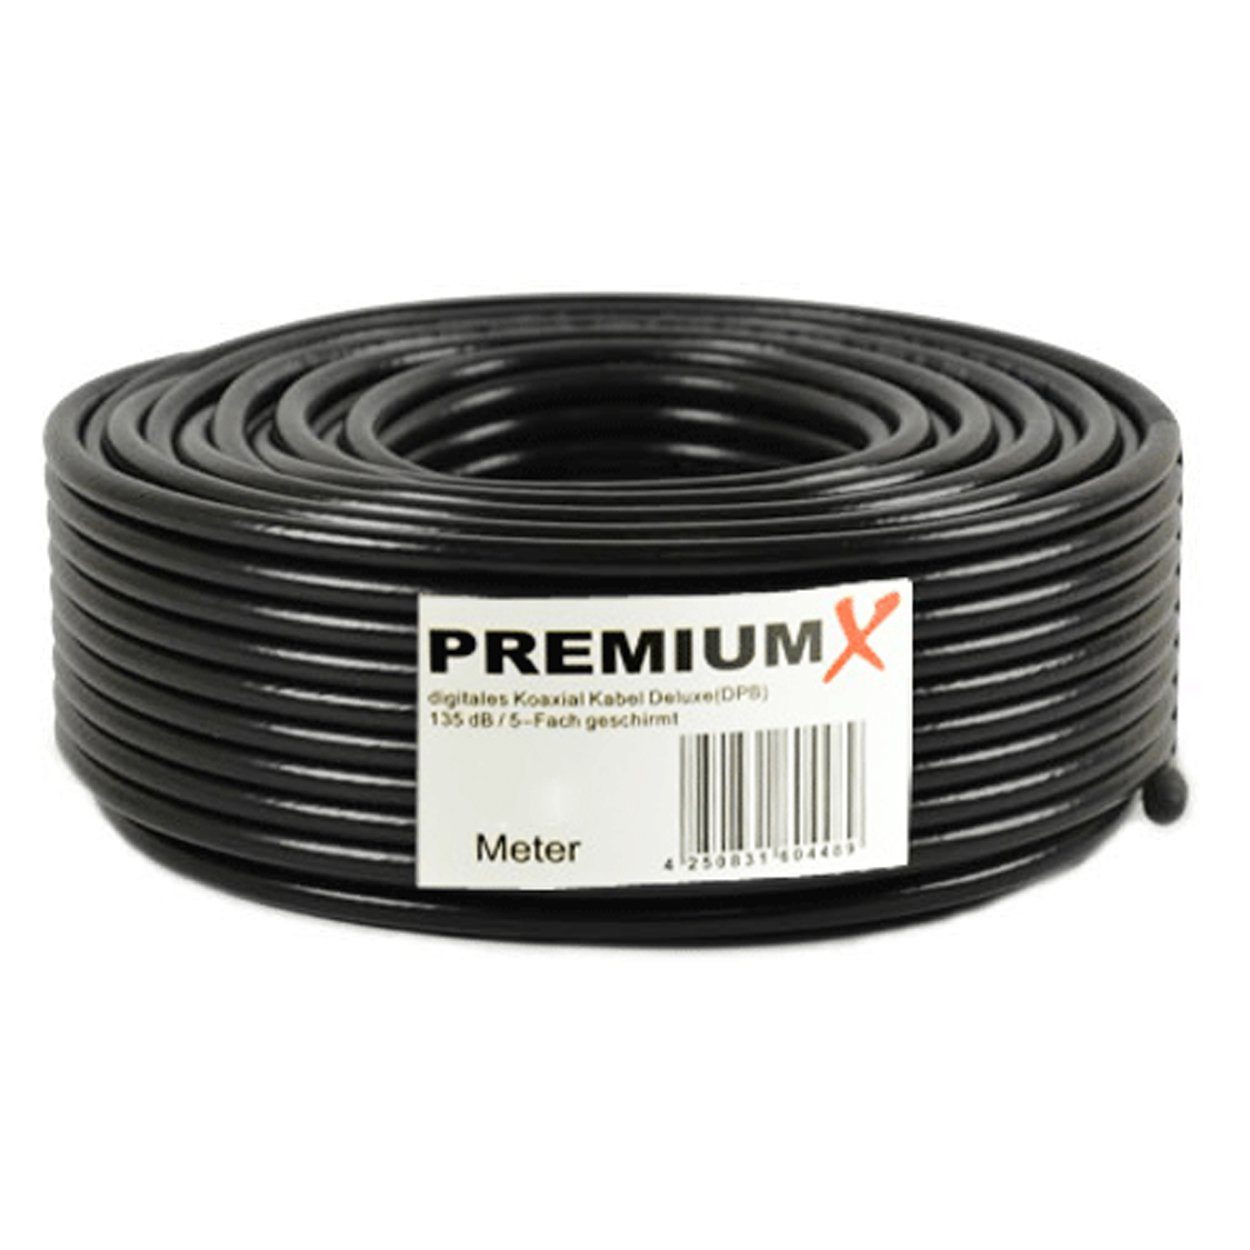 PremiumX Koaxial 5-Fach PRO SCHWARZ DELUXE 50m 135dB Kupfer F-Stecker 10x SAT-Kabel Kabel